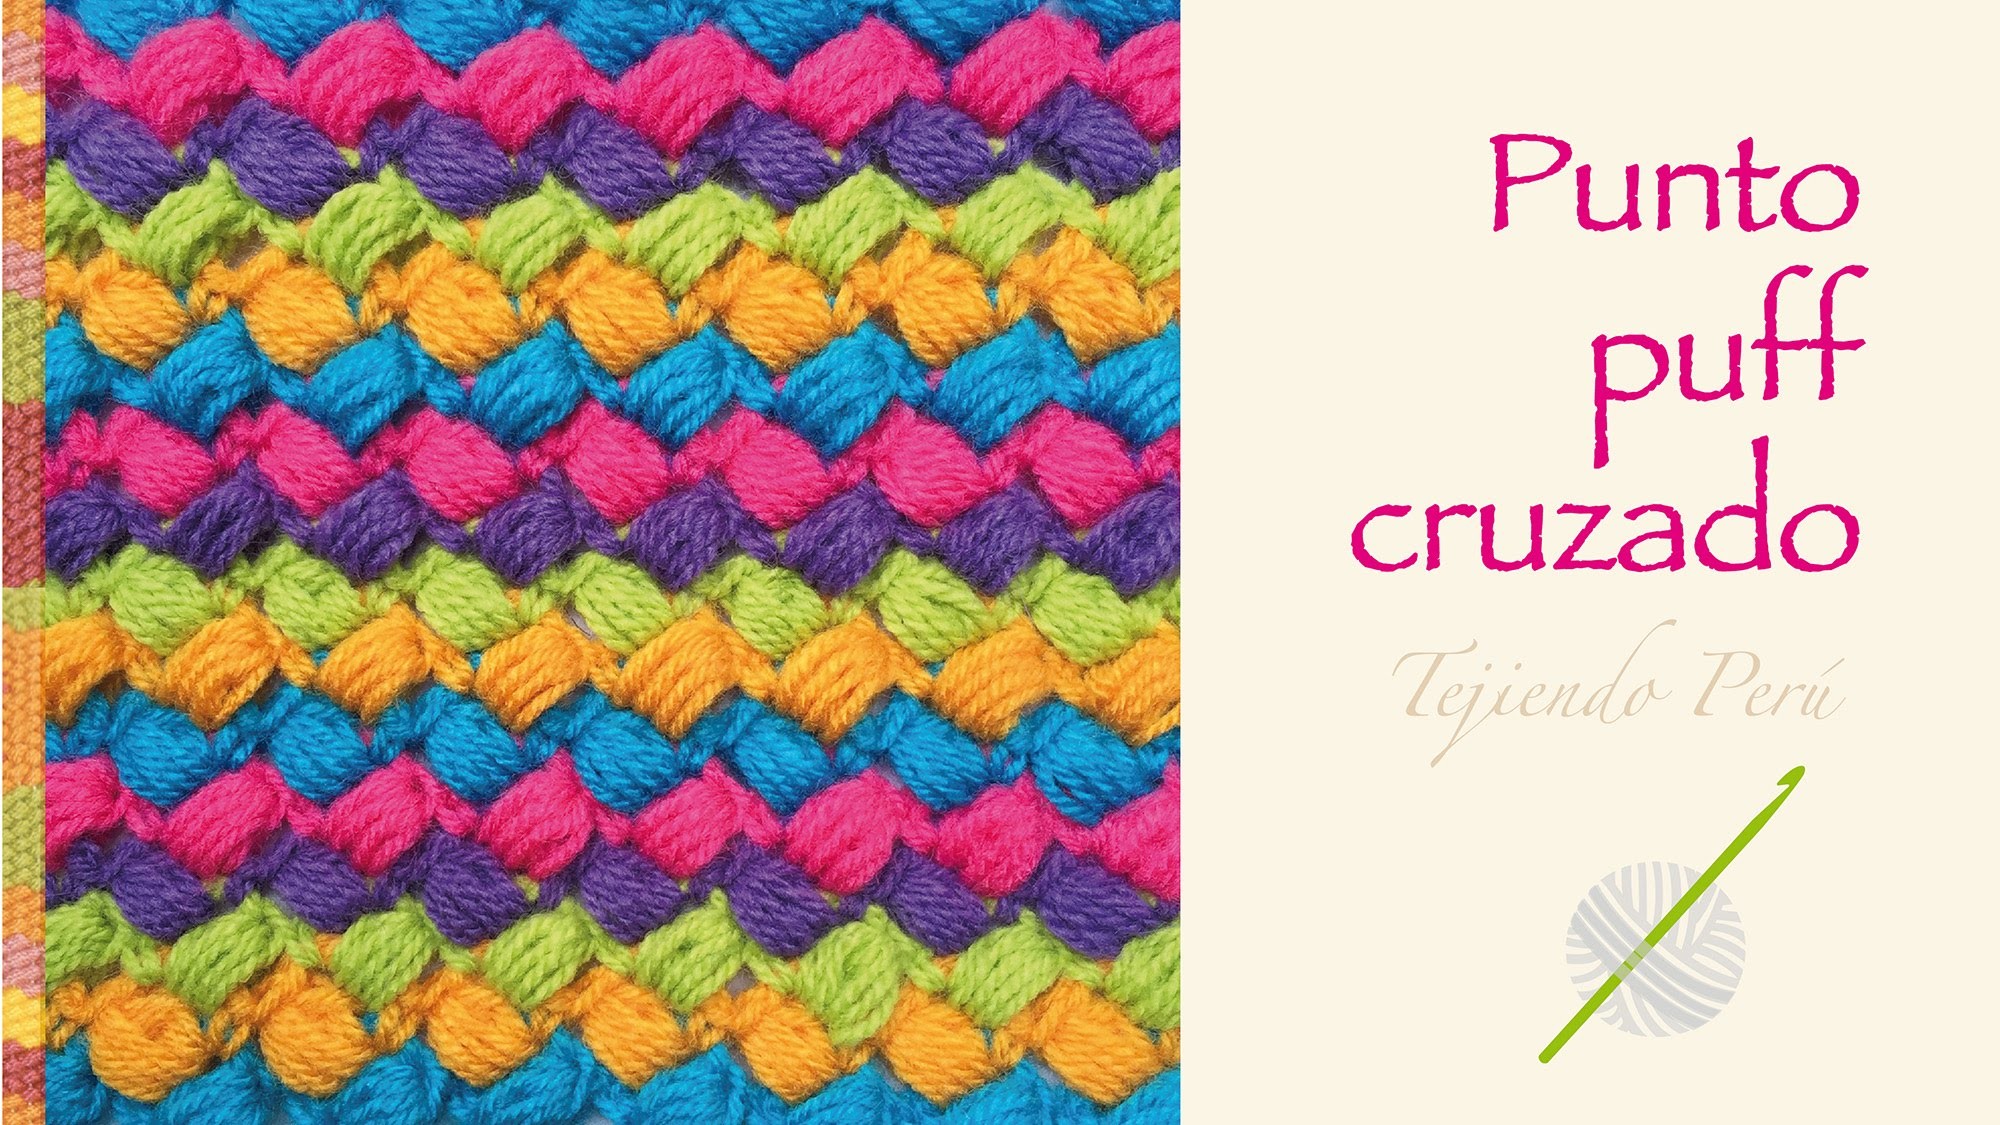 Crochet divertido paso a paso: punto puff cruzado de colores!